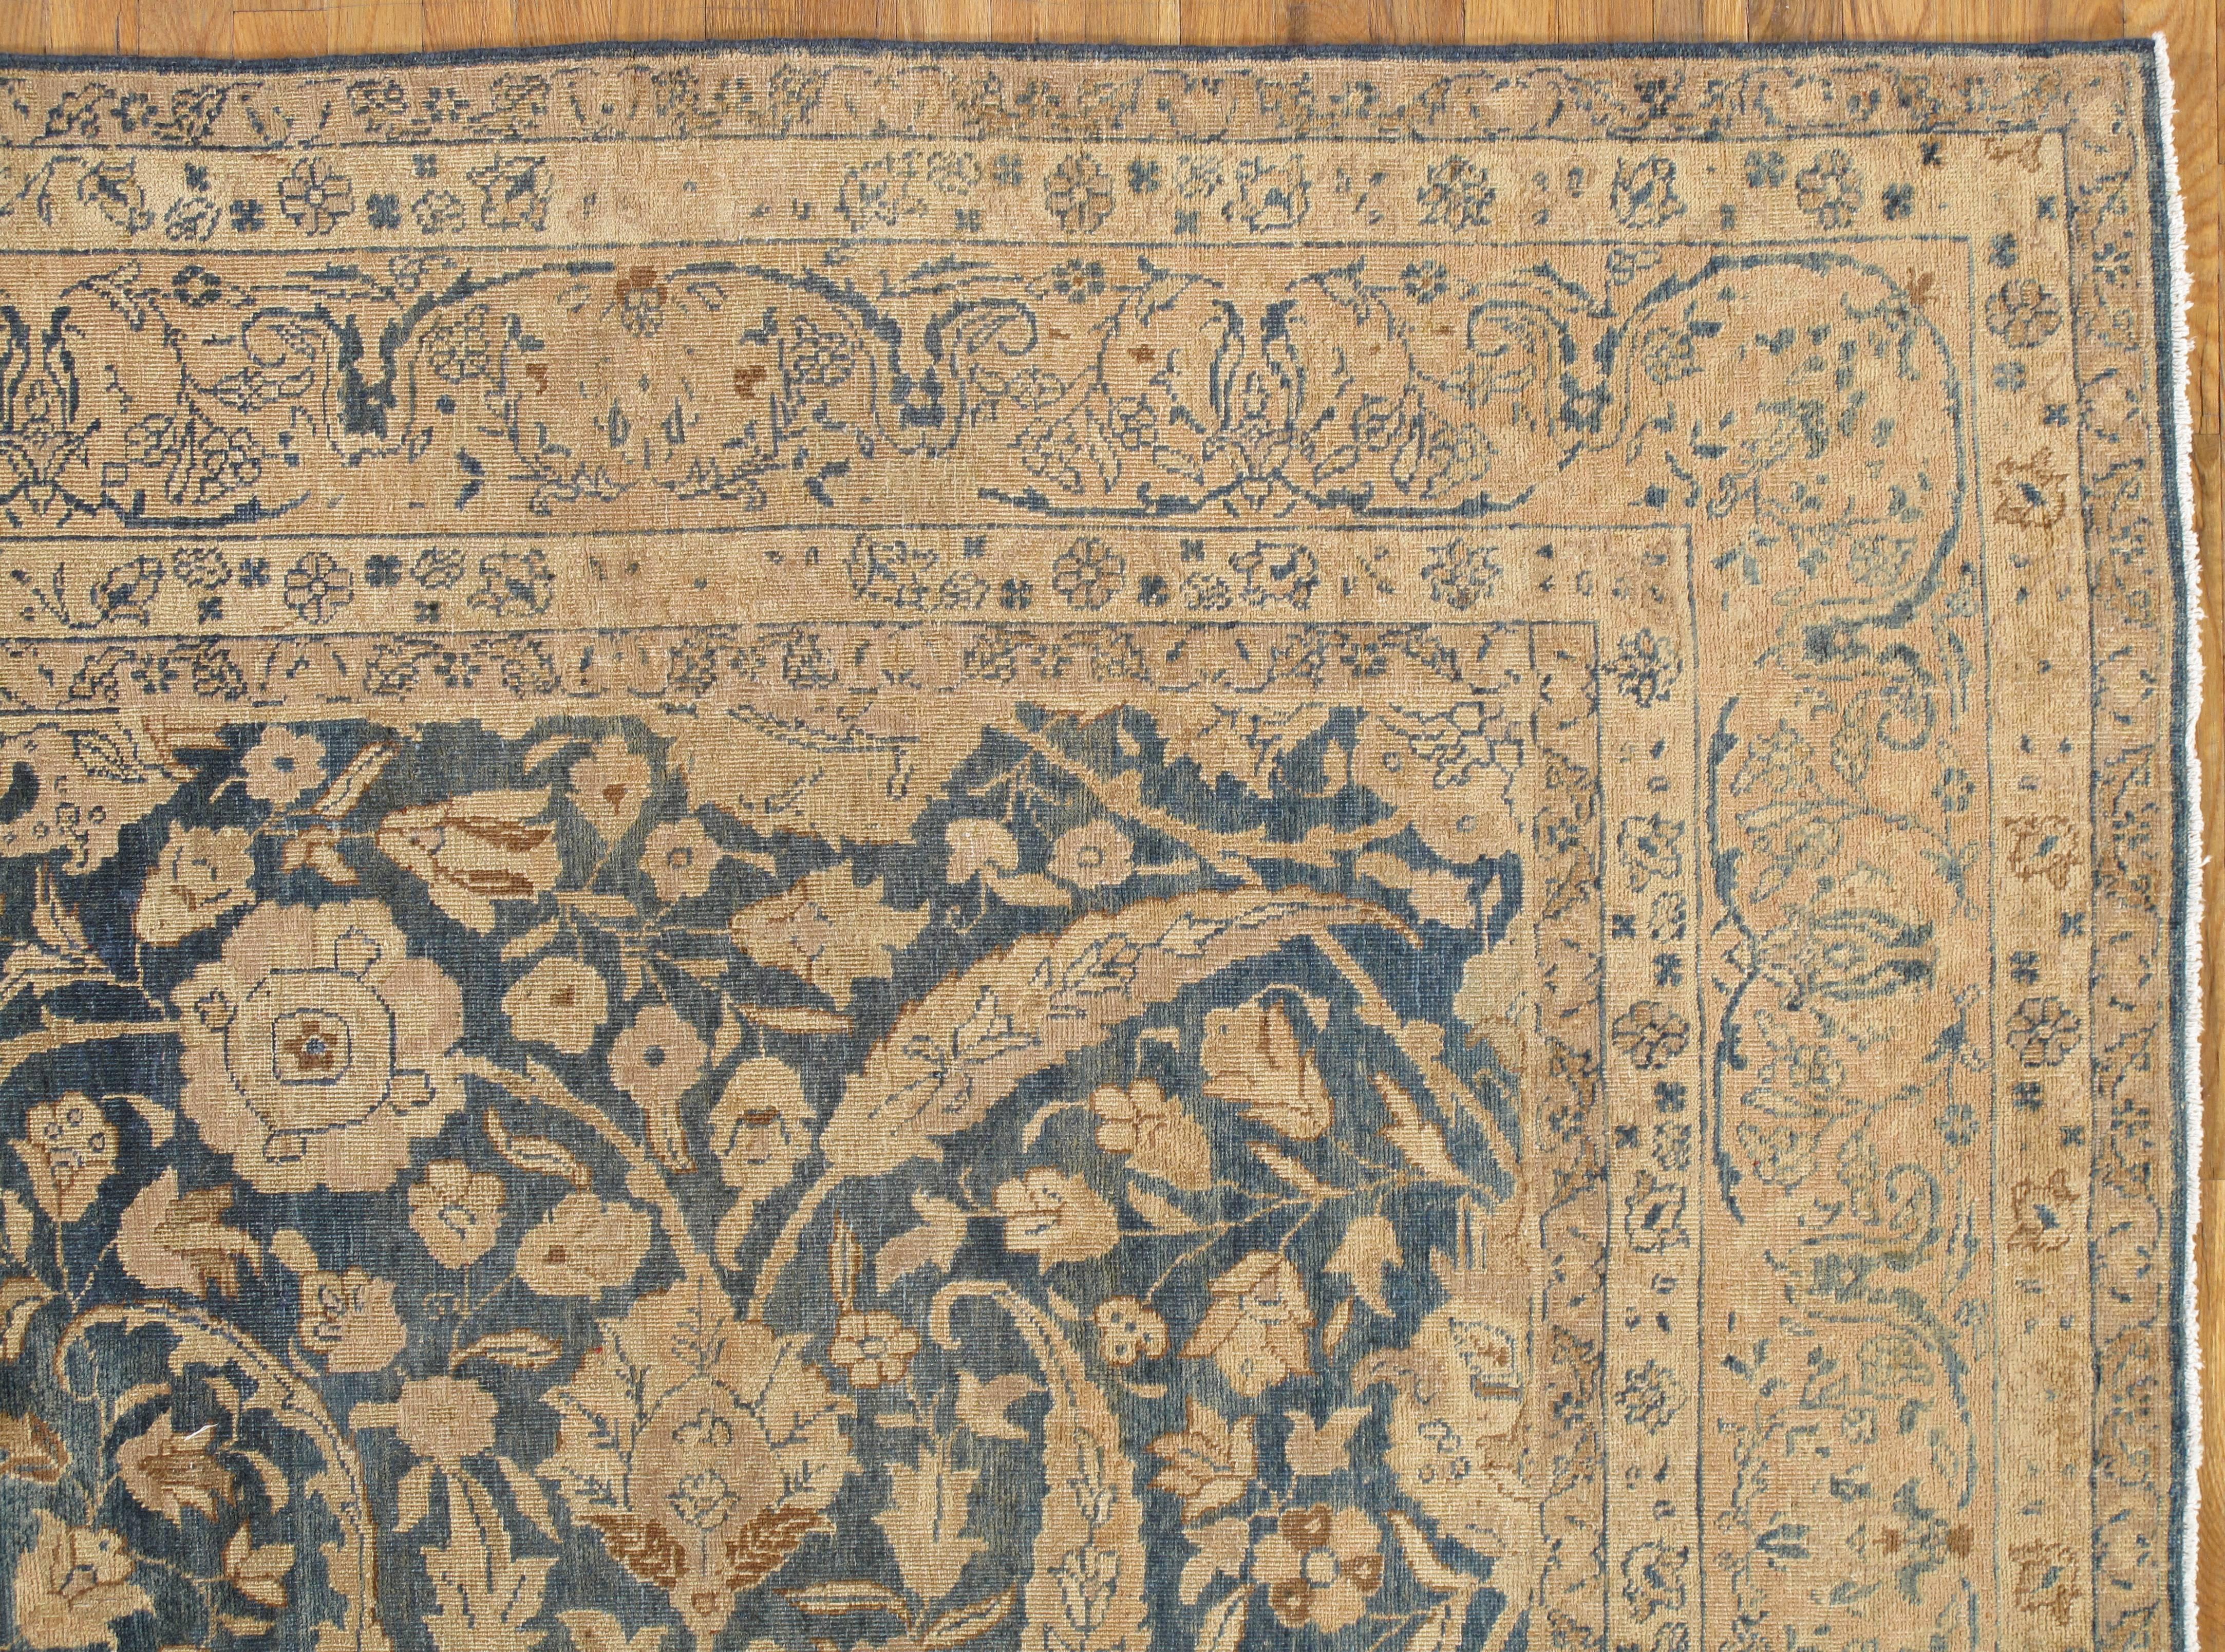 Les tapis anciens de Tabriz se distinguent par leur excellent tissage et par leur remarquable adhésion aux traditions classiques de la conception des tapis persans. La ville de Tabriz, située dans la région nord-ouest de la Perse, a été la première